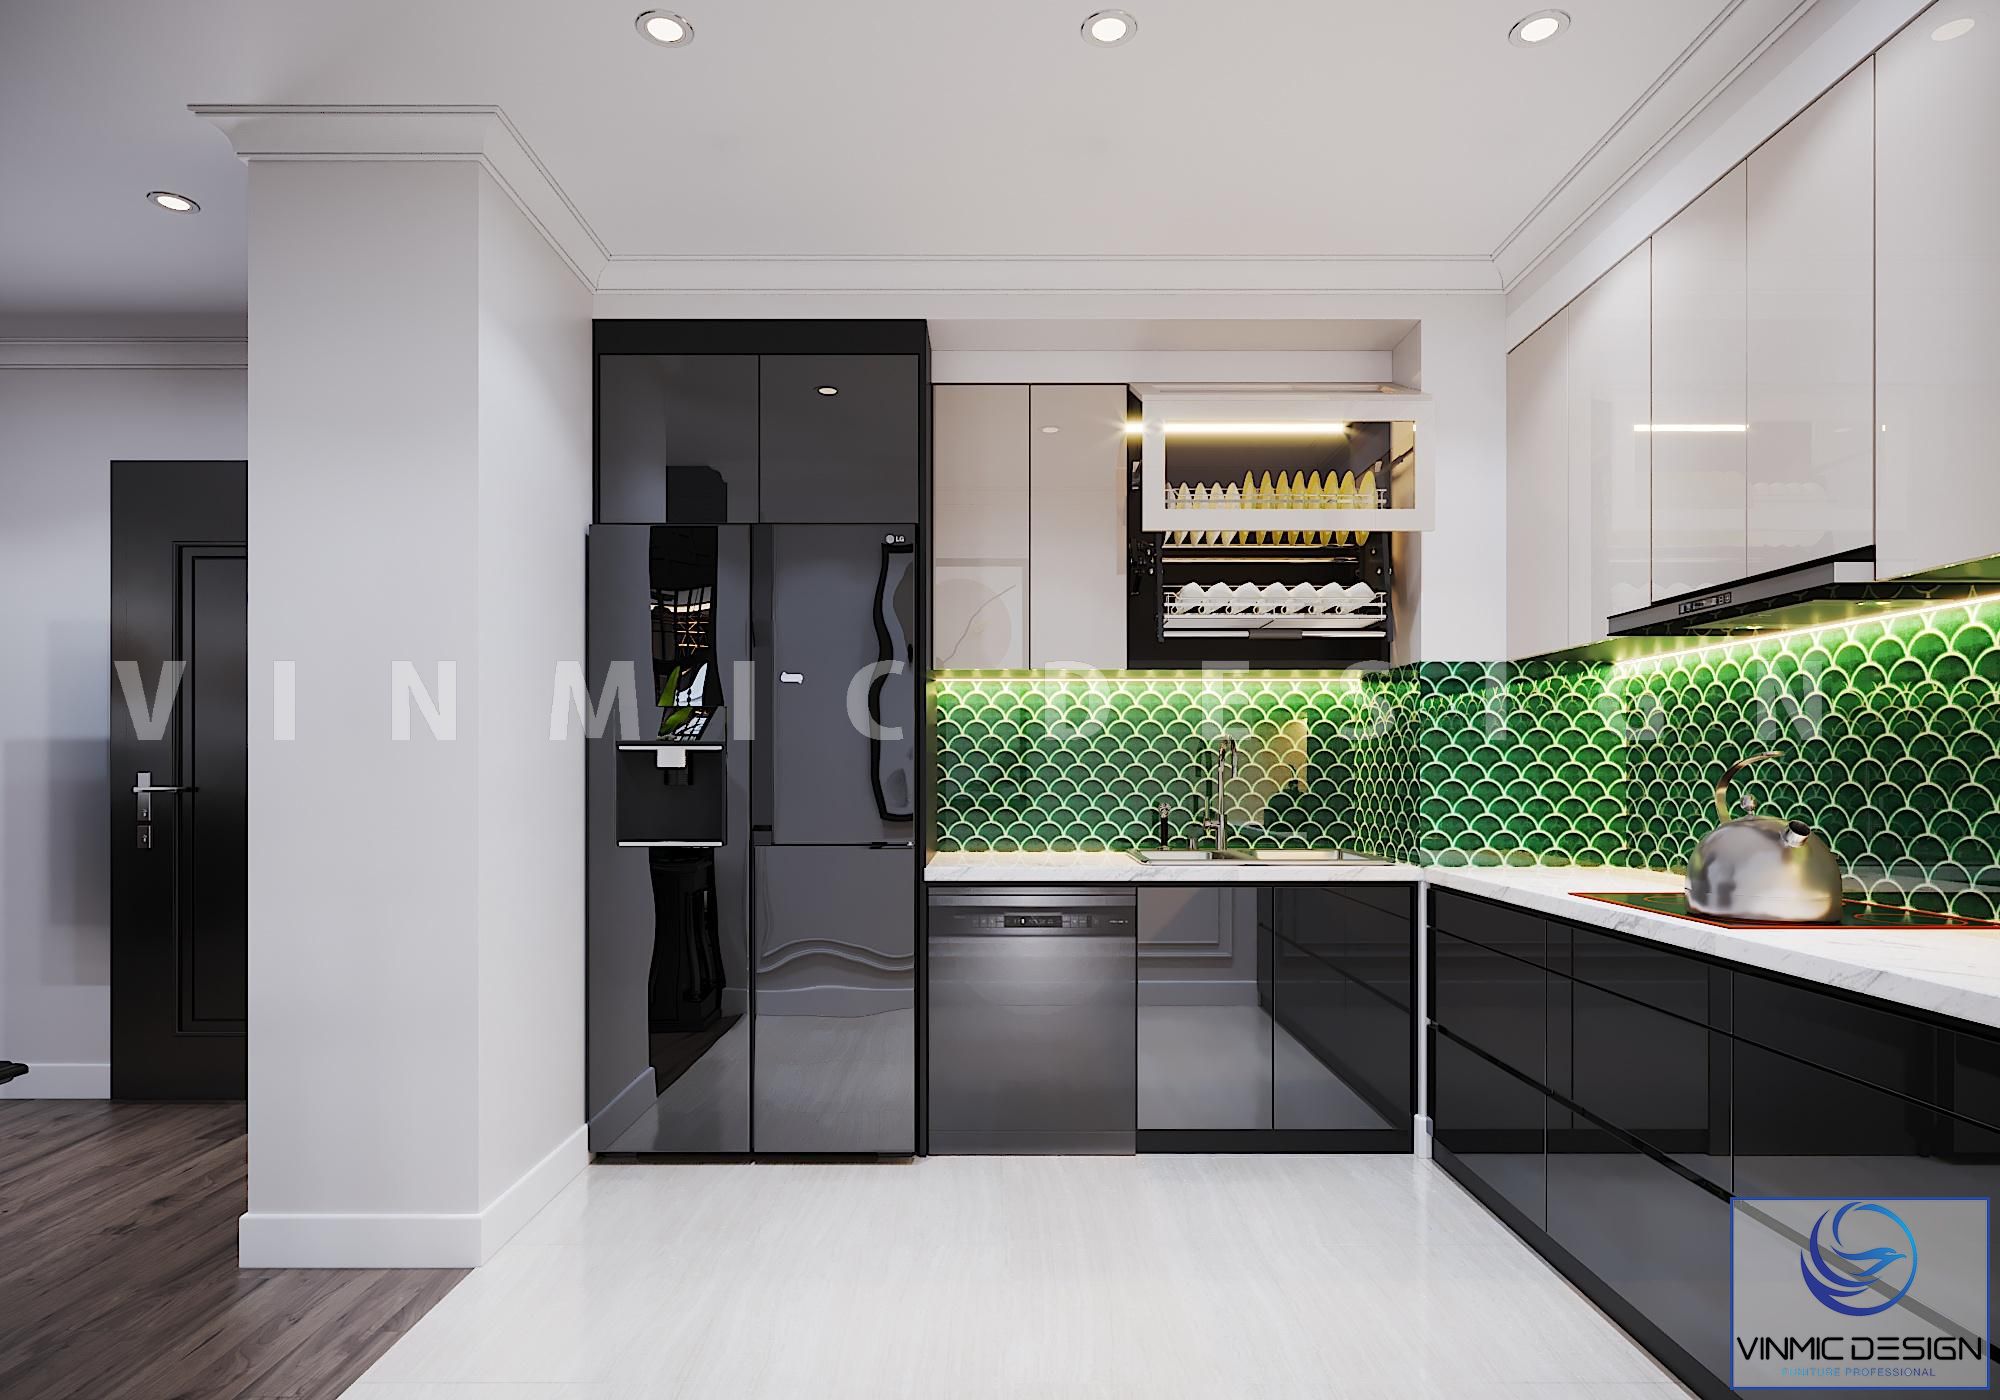 Tủ bếp được thiết kế ấn tượng với dải vách tường hình vảy cá màu xanh ngọc, nổi bật không gian bếp 